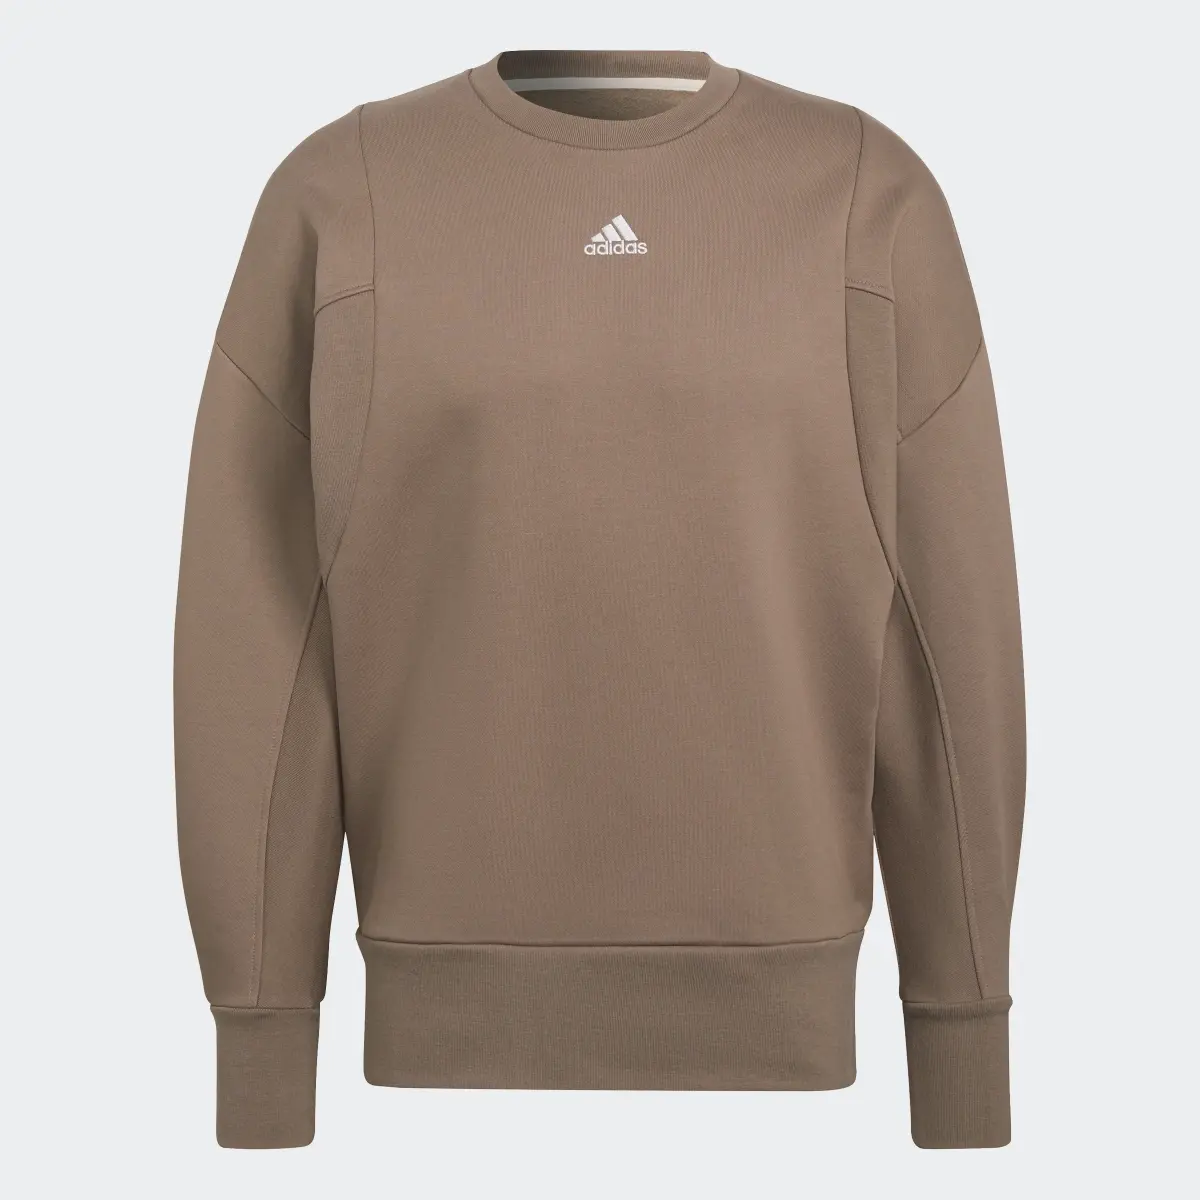 Adidas Studio Lounge Fleece Sweater. 1